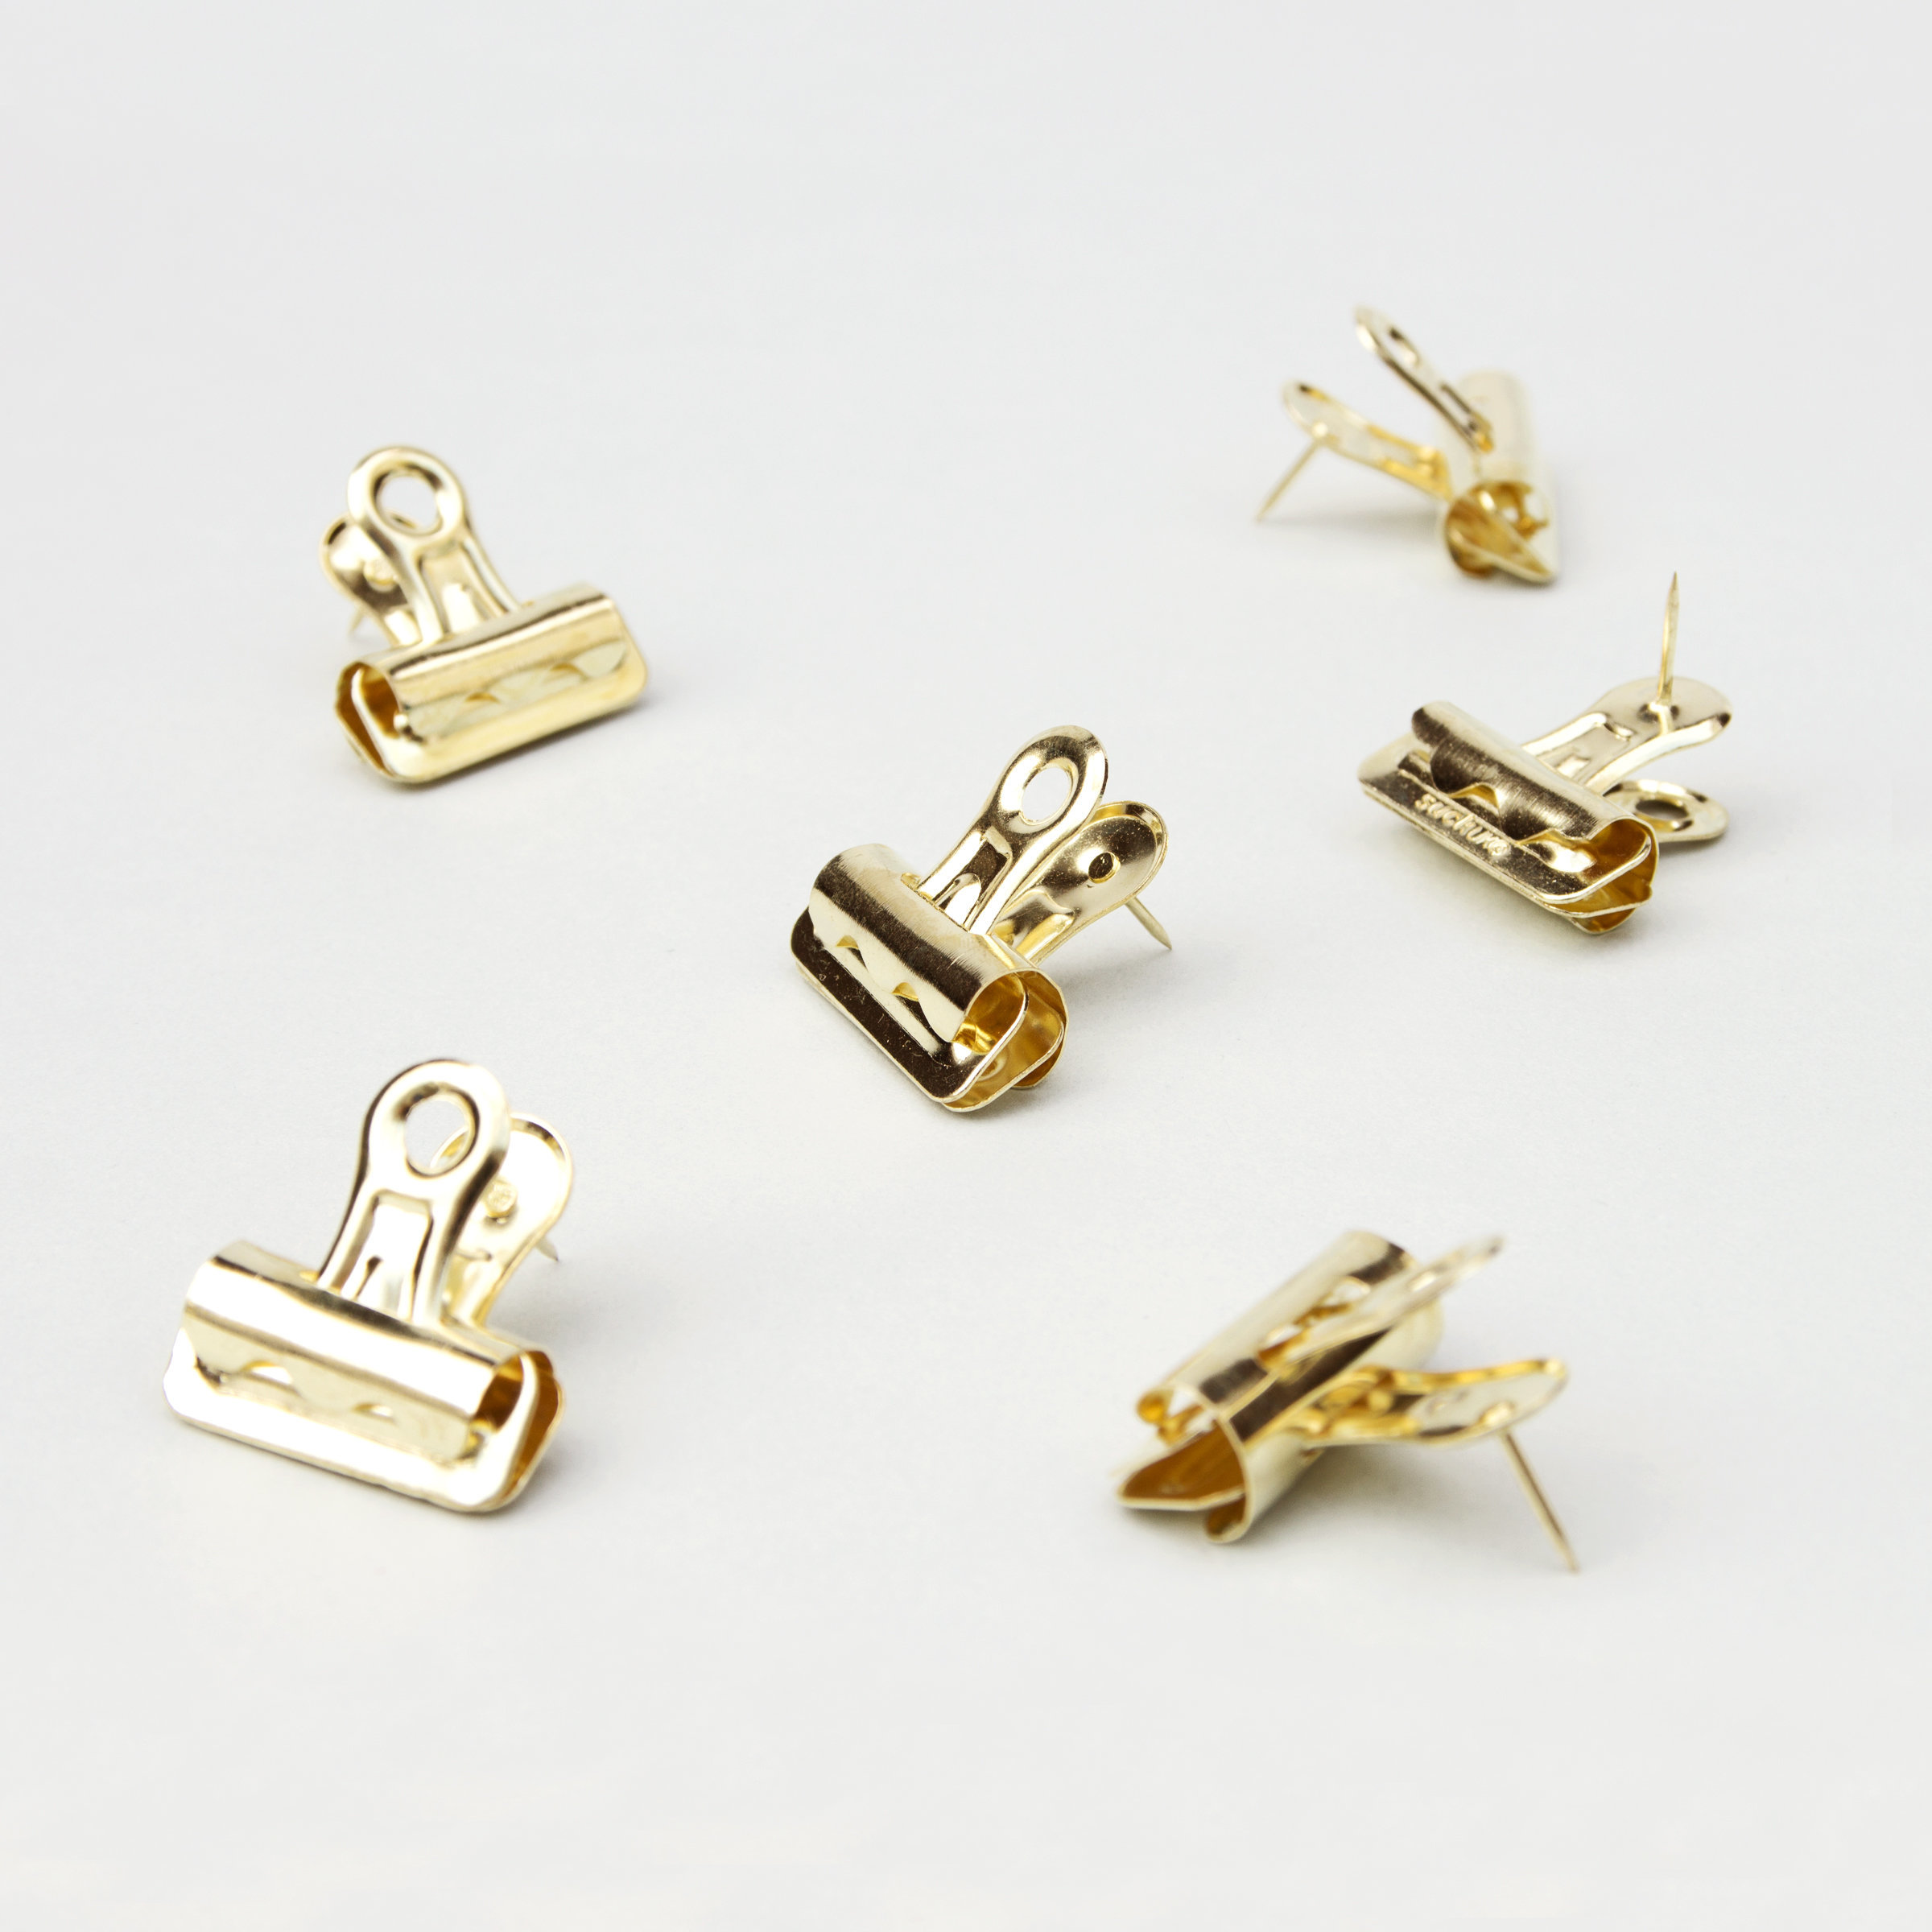 Bulldog push pin clips in gold